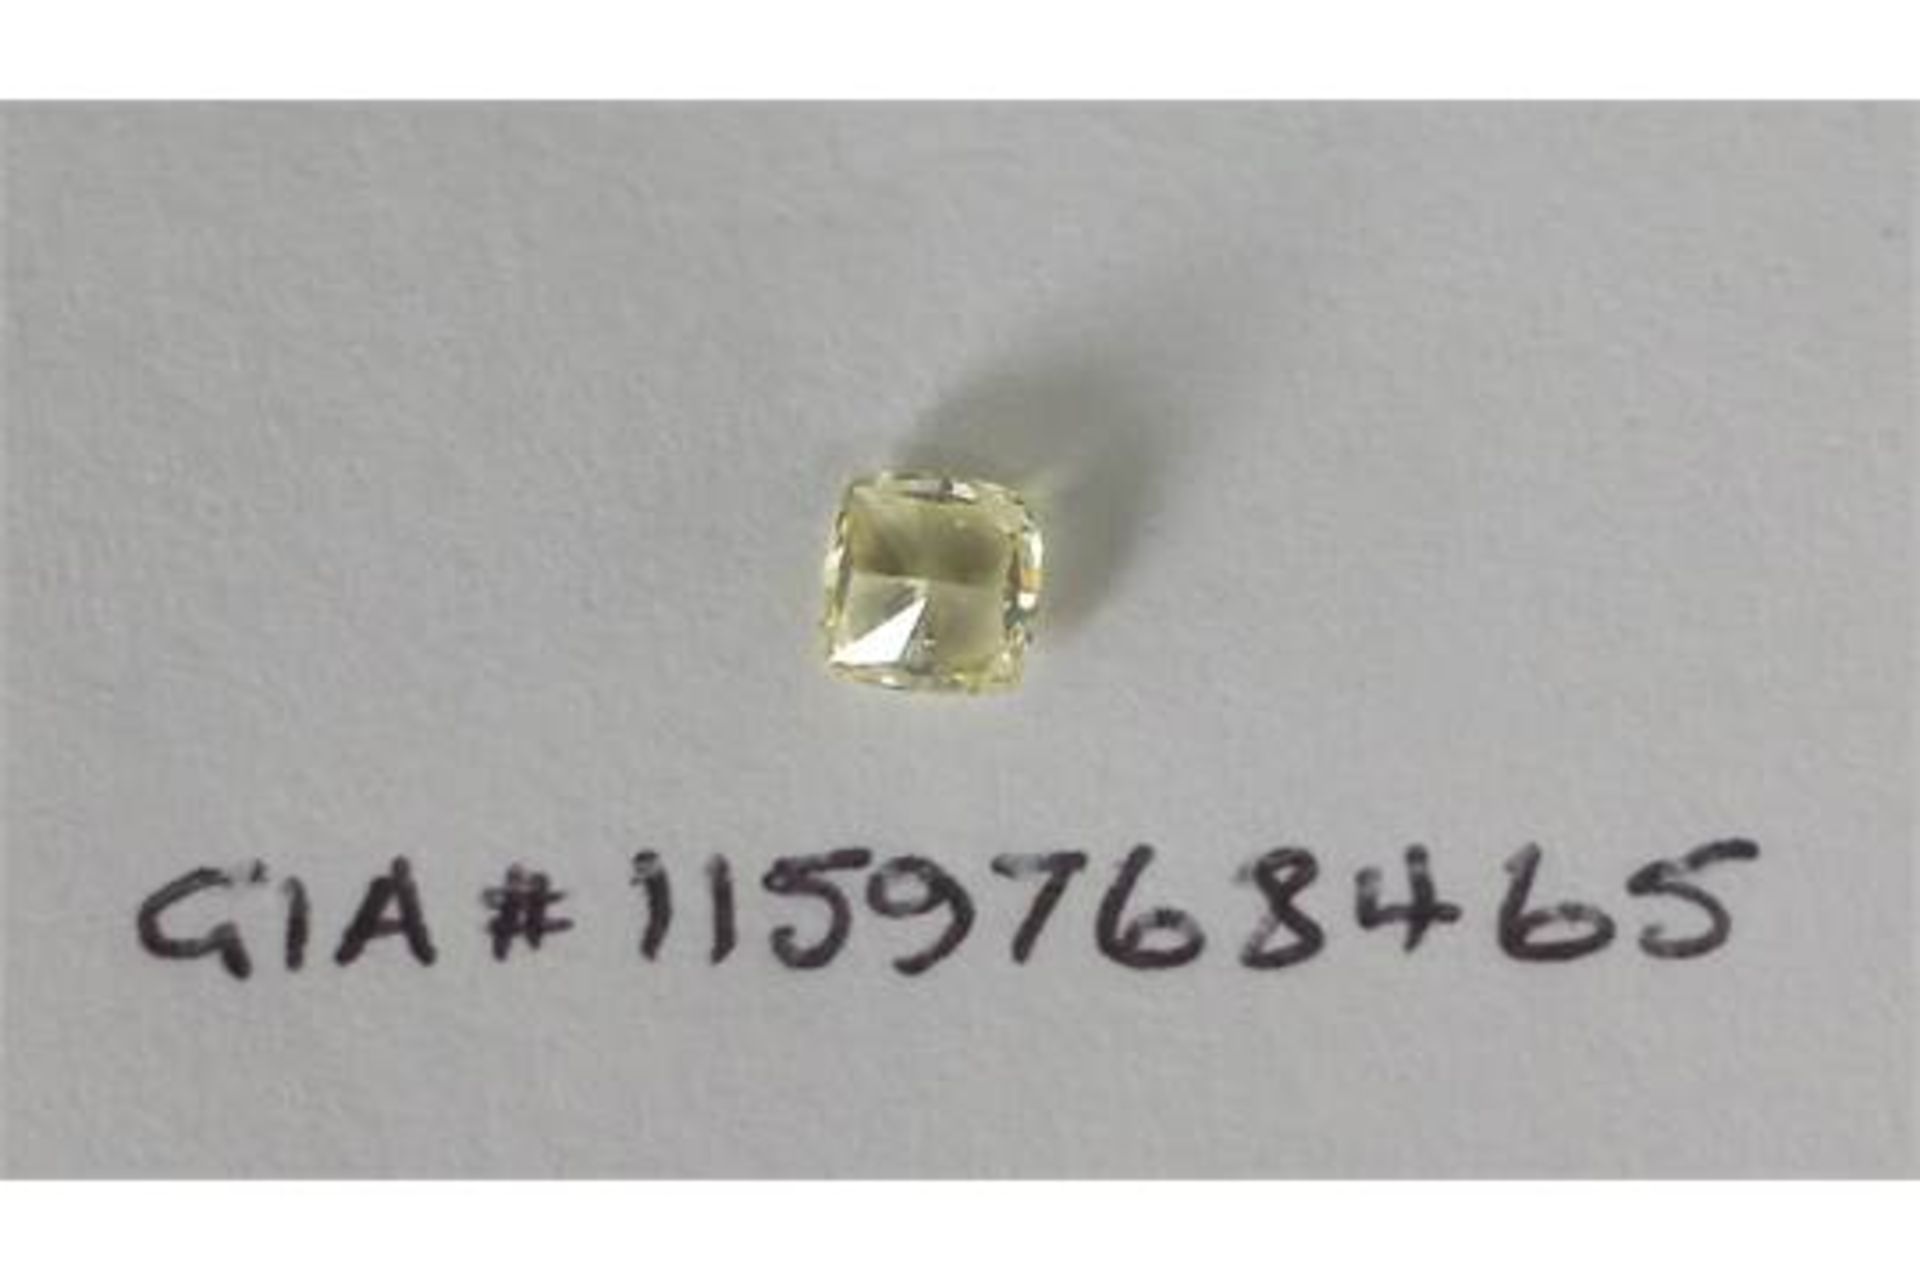 0.46 carat Modified Square Brilliant Diamond - Image 2 of 4